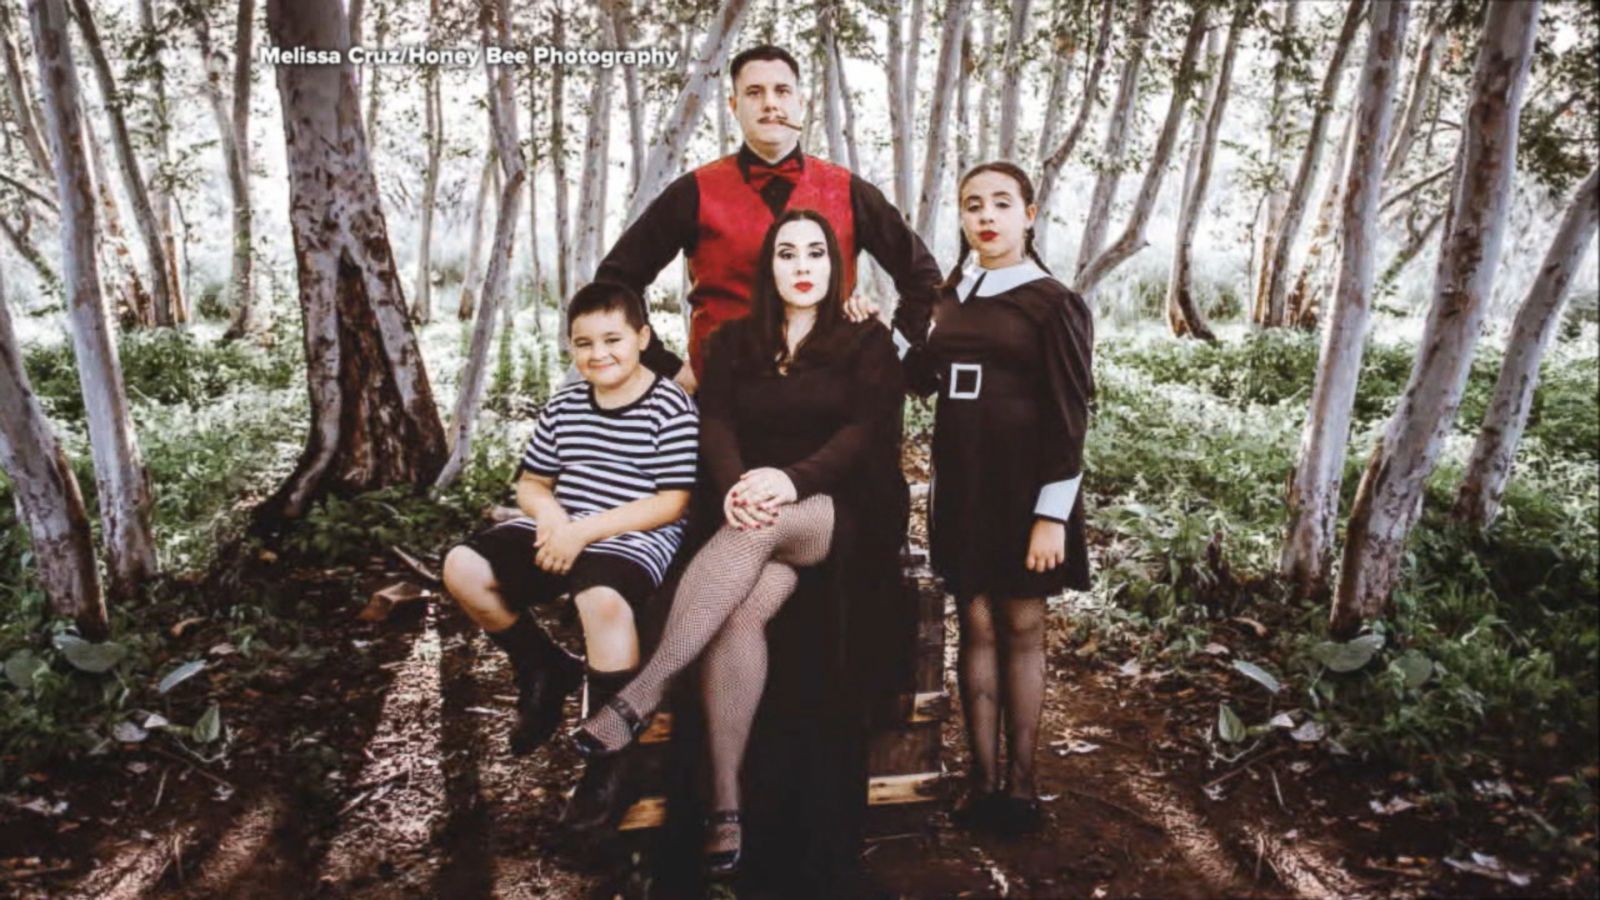 Family poses for creepy, kooky 'Addams Family'-themed Halloween photo